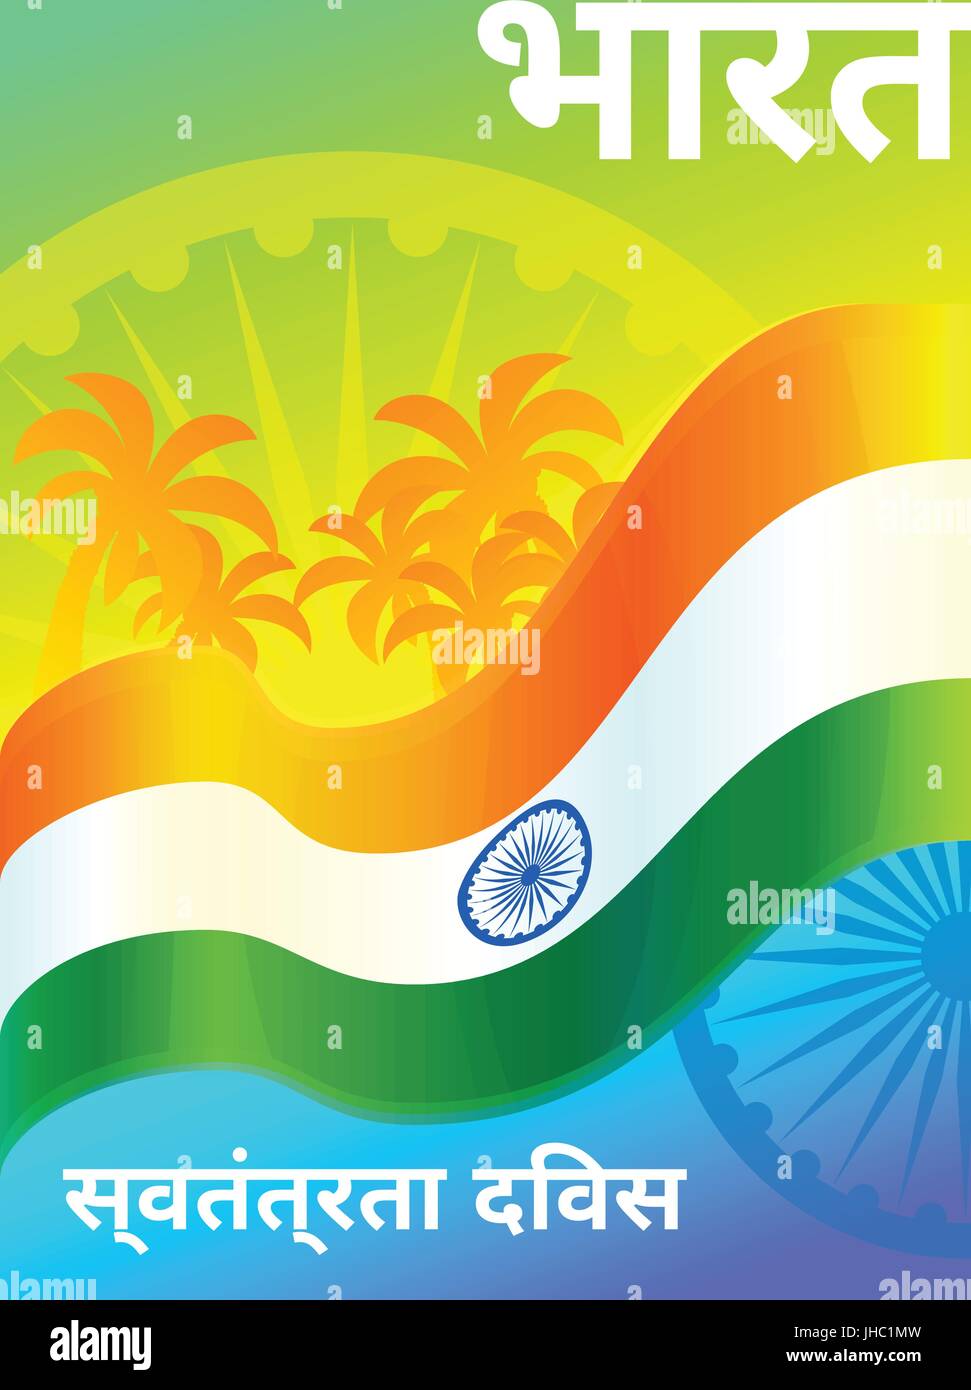 Indien-Unabhängigkeitstag Nationalfeiertag, 15.August. Vektor Grußkartenvorlage mit Ashoka-Rad und Palmen. Text in Hindi bedeutet Indien unab Stock Vektor